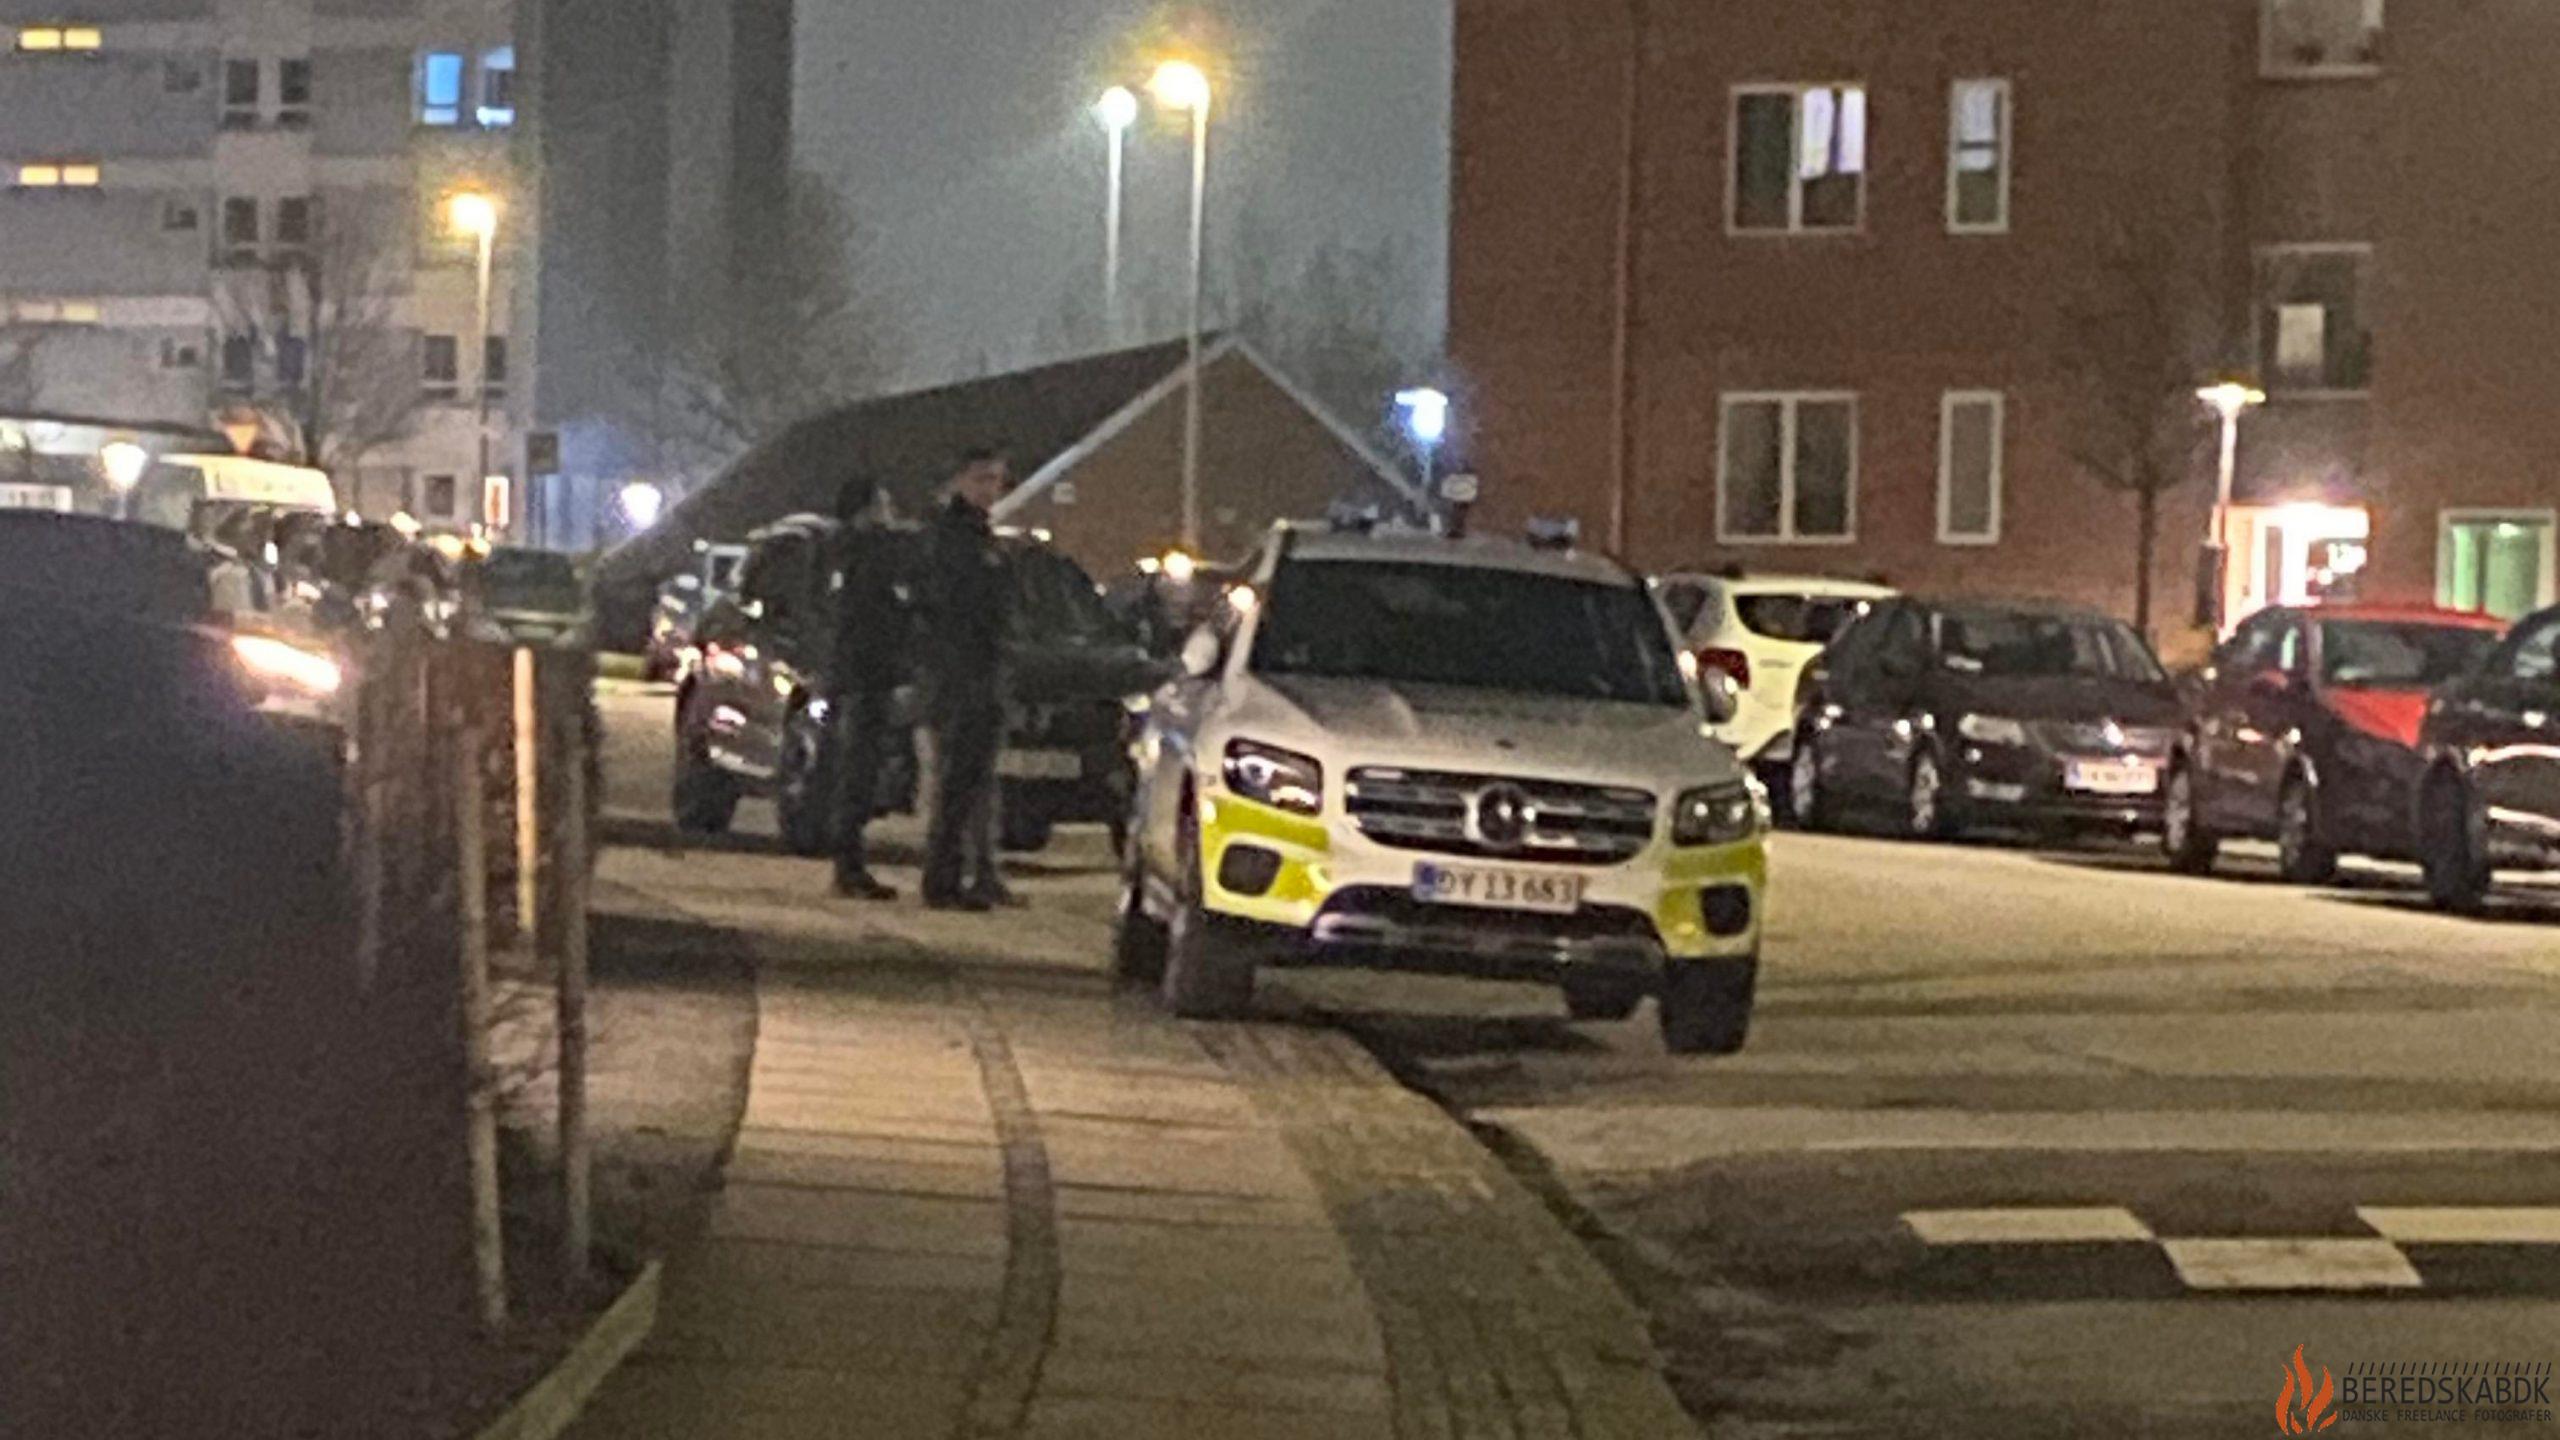 22-02-24 politiet er til stede på Mimersgade i Horsens